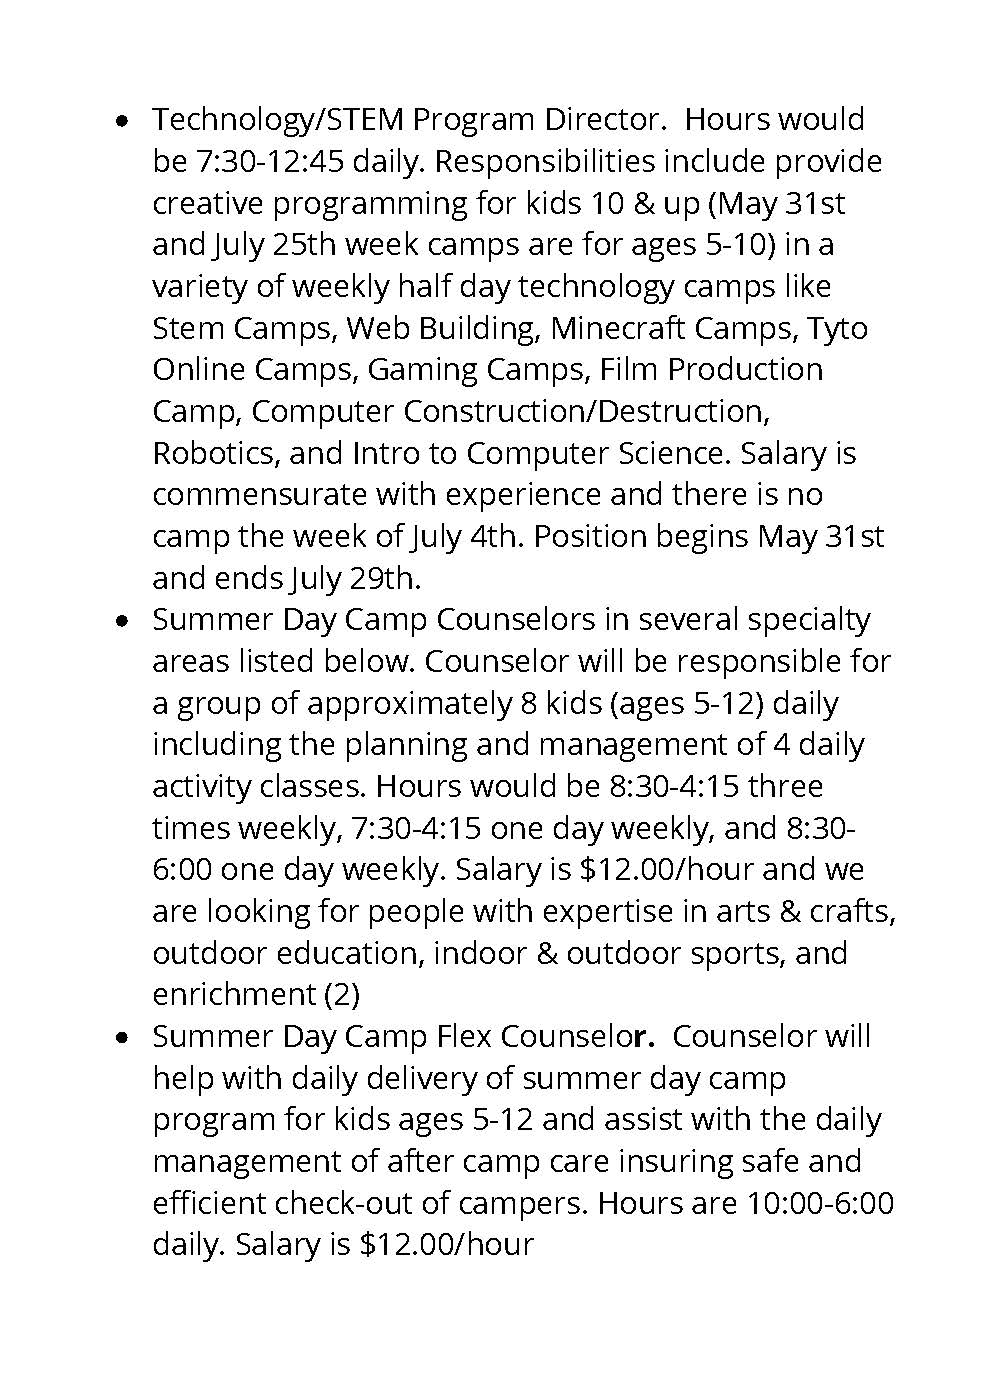 Hiring: Technology/STEM Program Directory, Summer Day Camp Counselors, Summer Day Camp Flex Counselors